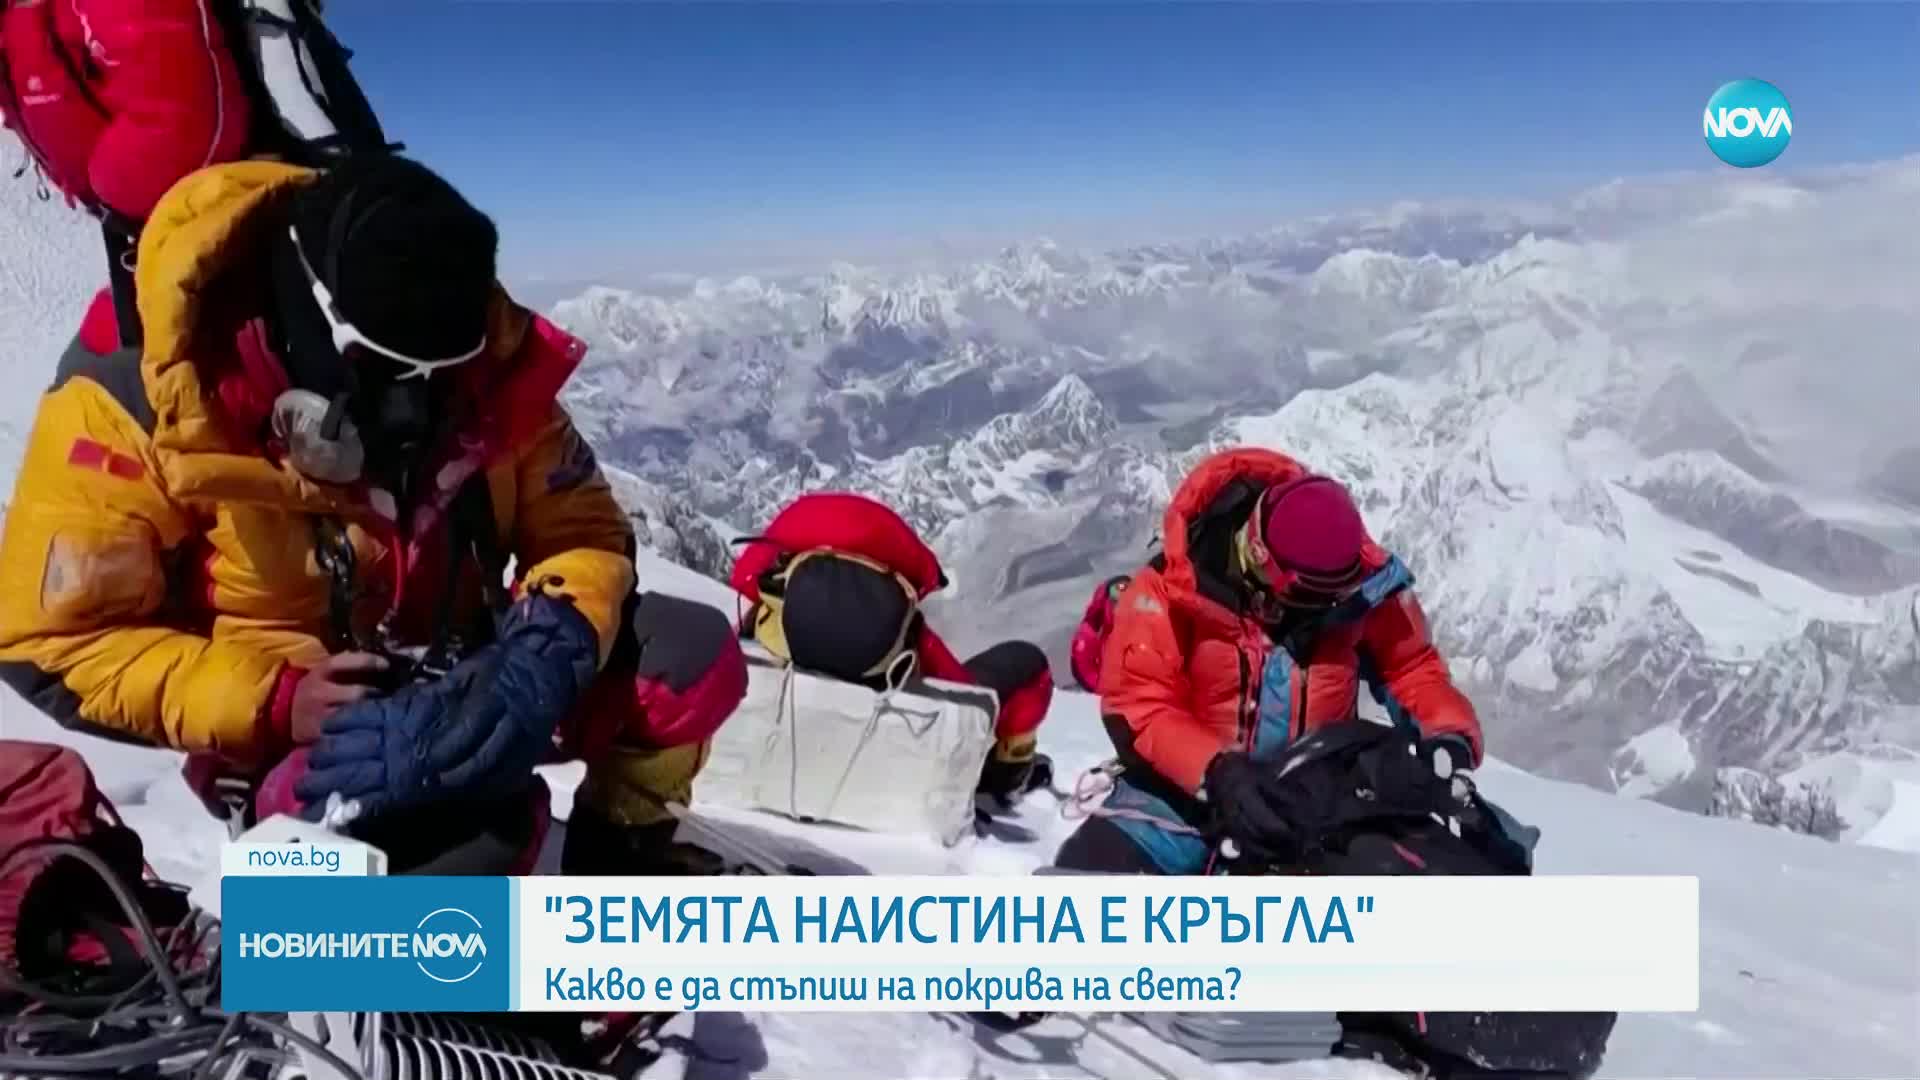 "Земята наистина е кръгла": Разказ на първата българка, изкачила Еверест